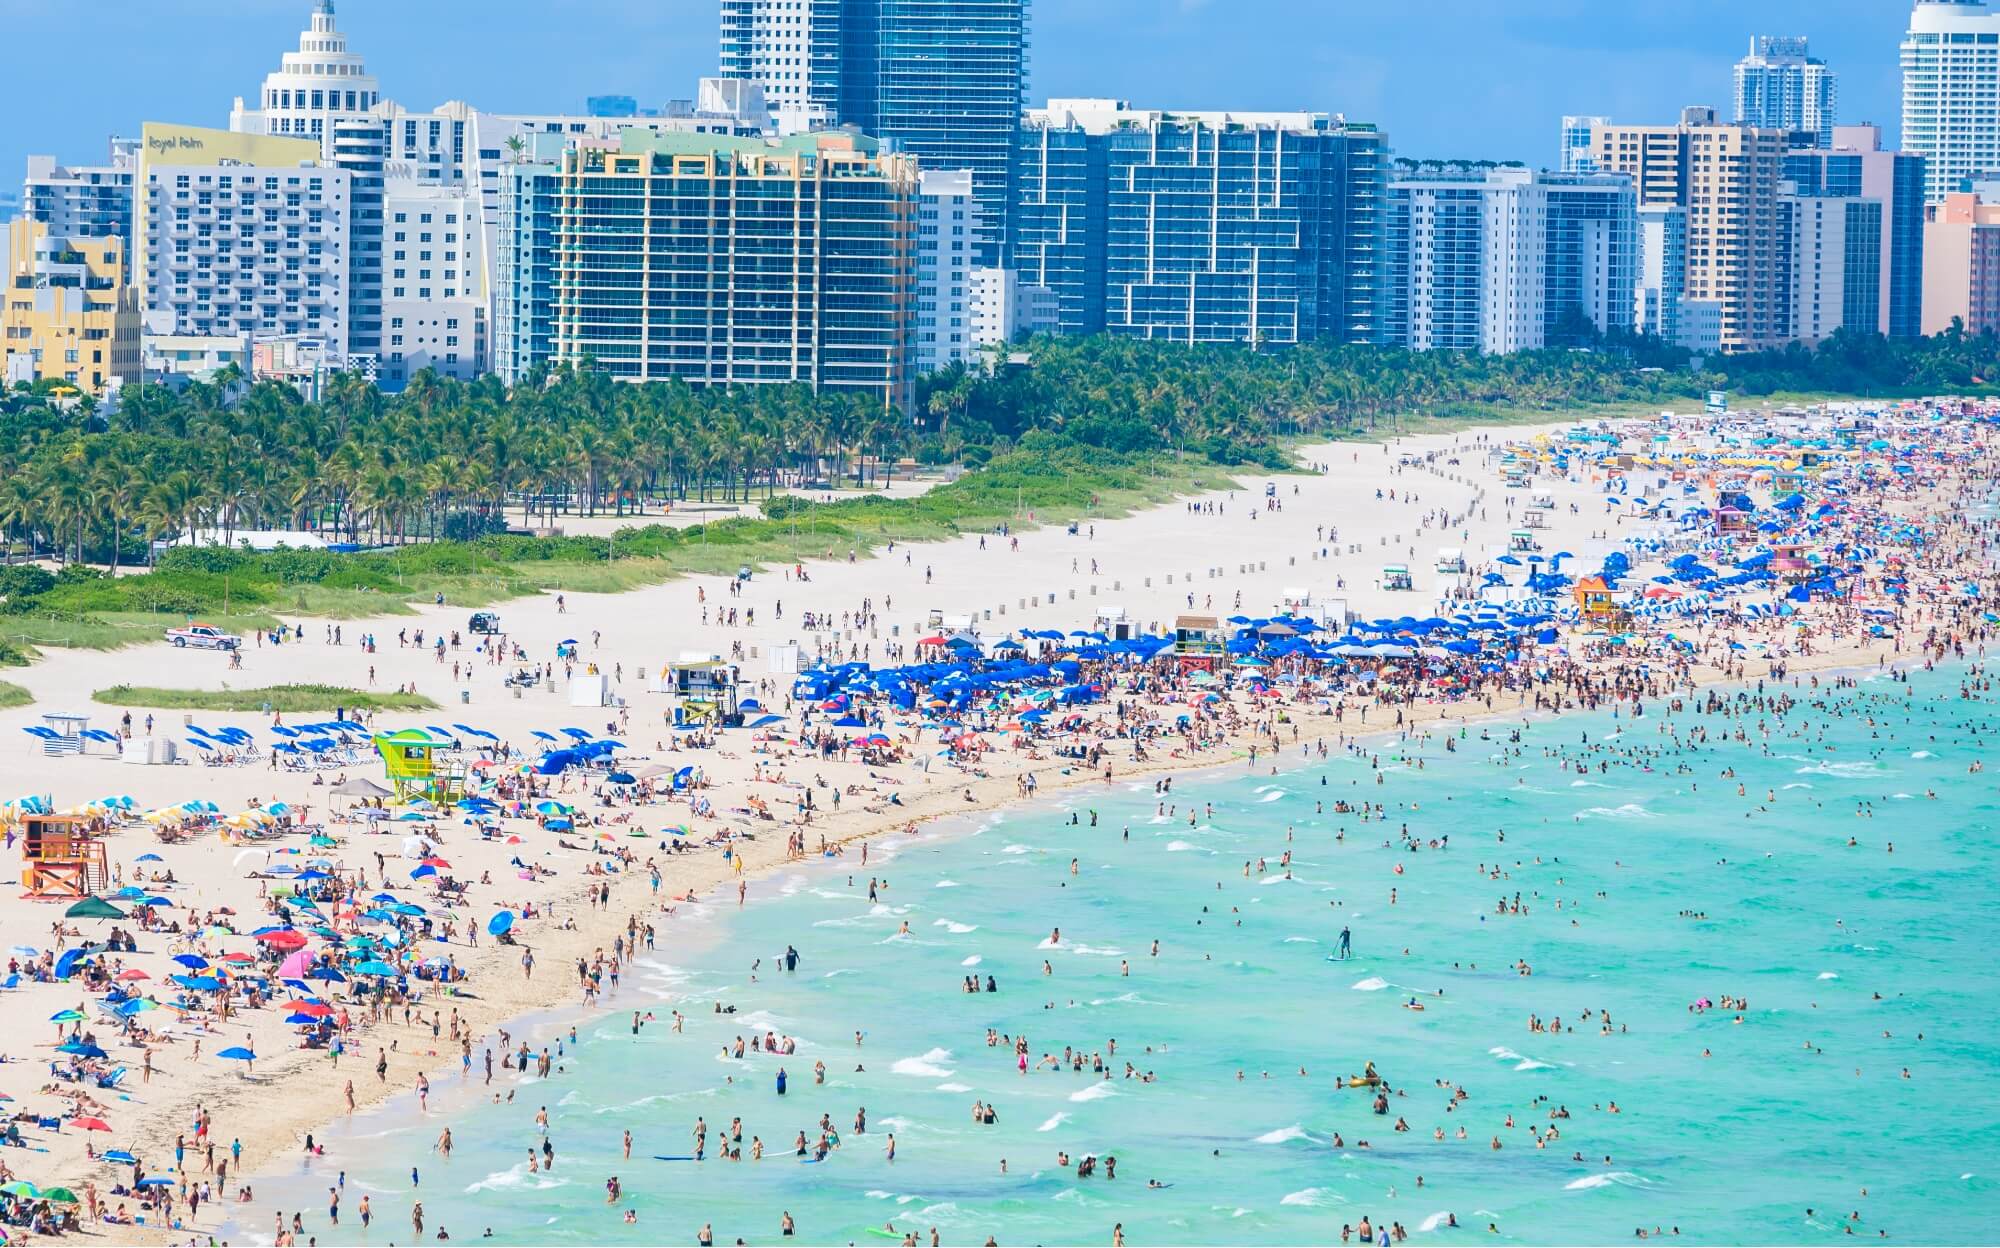 A busy Florida beach during spring break